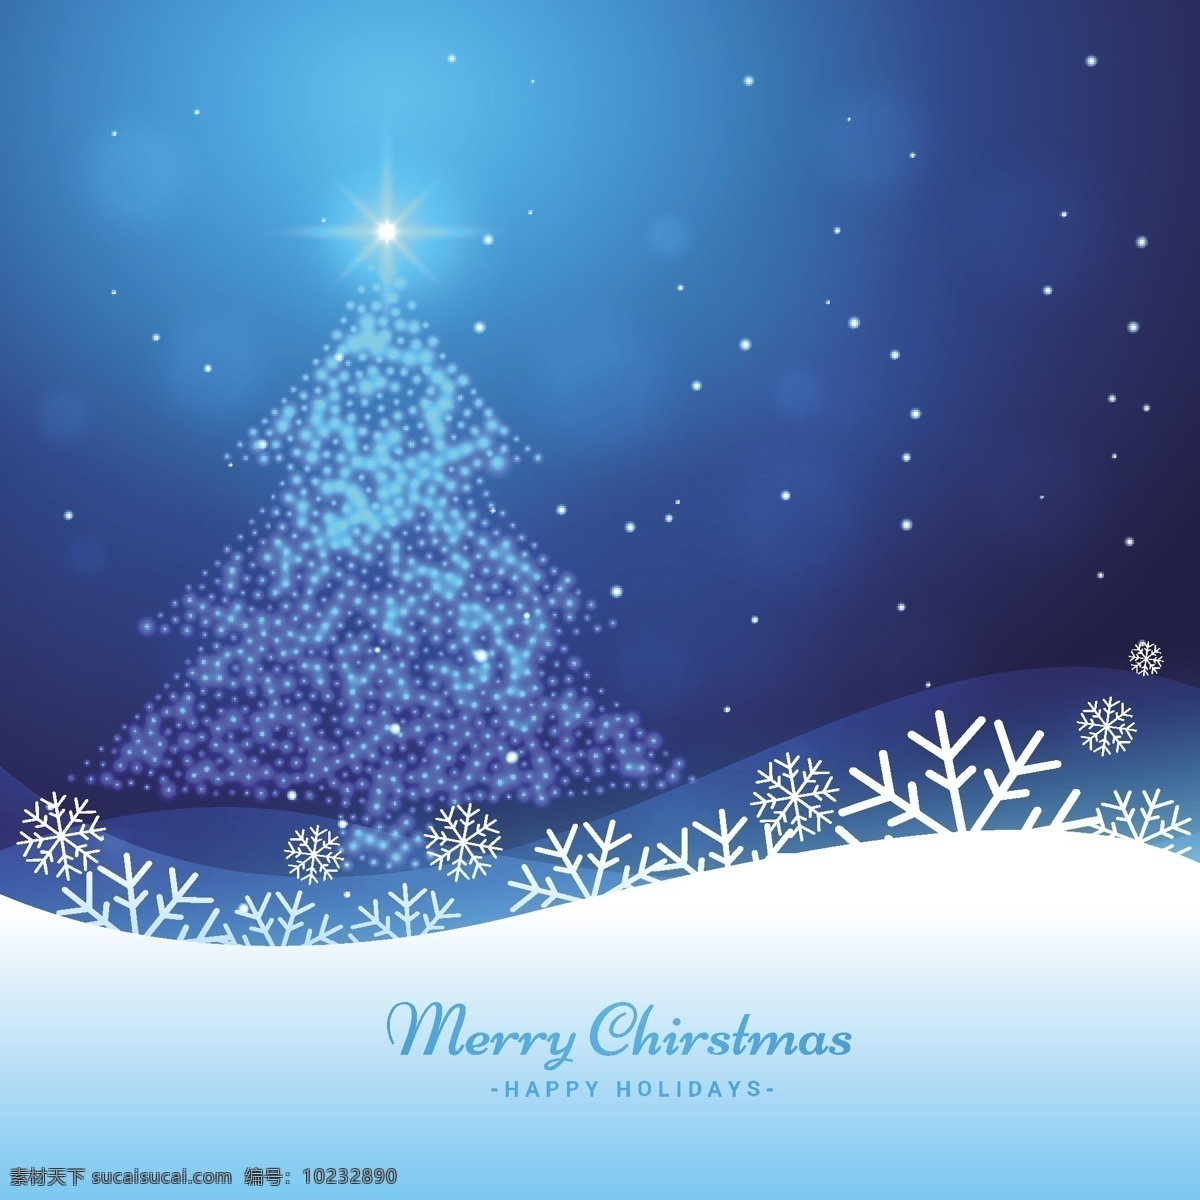 背景 闪亮 圣诞树 卡片 几何 新的一年里 雪 蓝色的背景 圣诞快乐 冬天 蓝色 快乐 圣诞背景 圣诞卡 圣诞 节日 庆典 新的冰